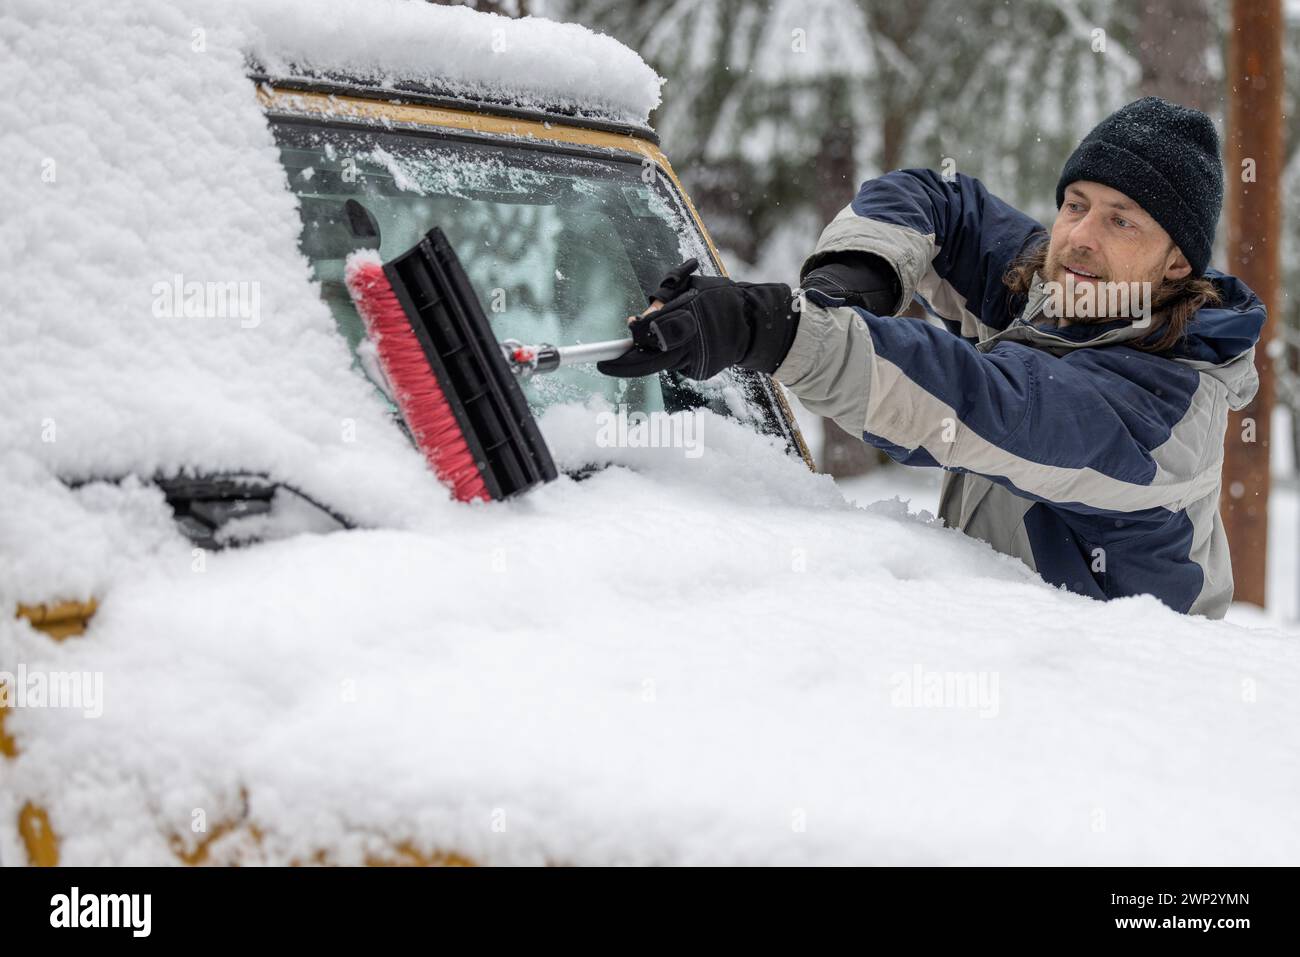 Ein Mann räumt Schnee von einem Autofenster. Die Szene ist kalt und schneebedeckt, und der Mann trägt einen schwarzen Hut Stockfoto